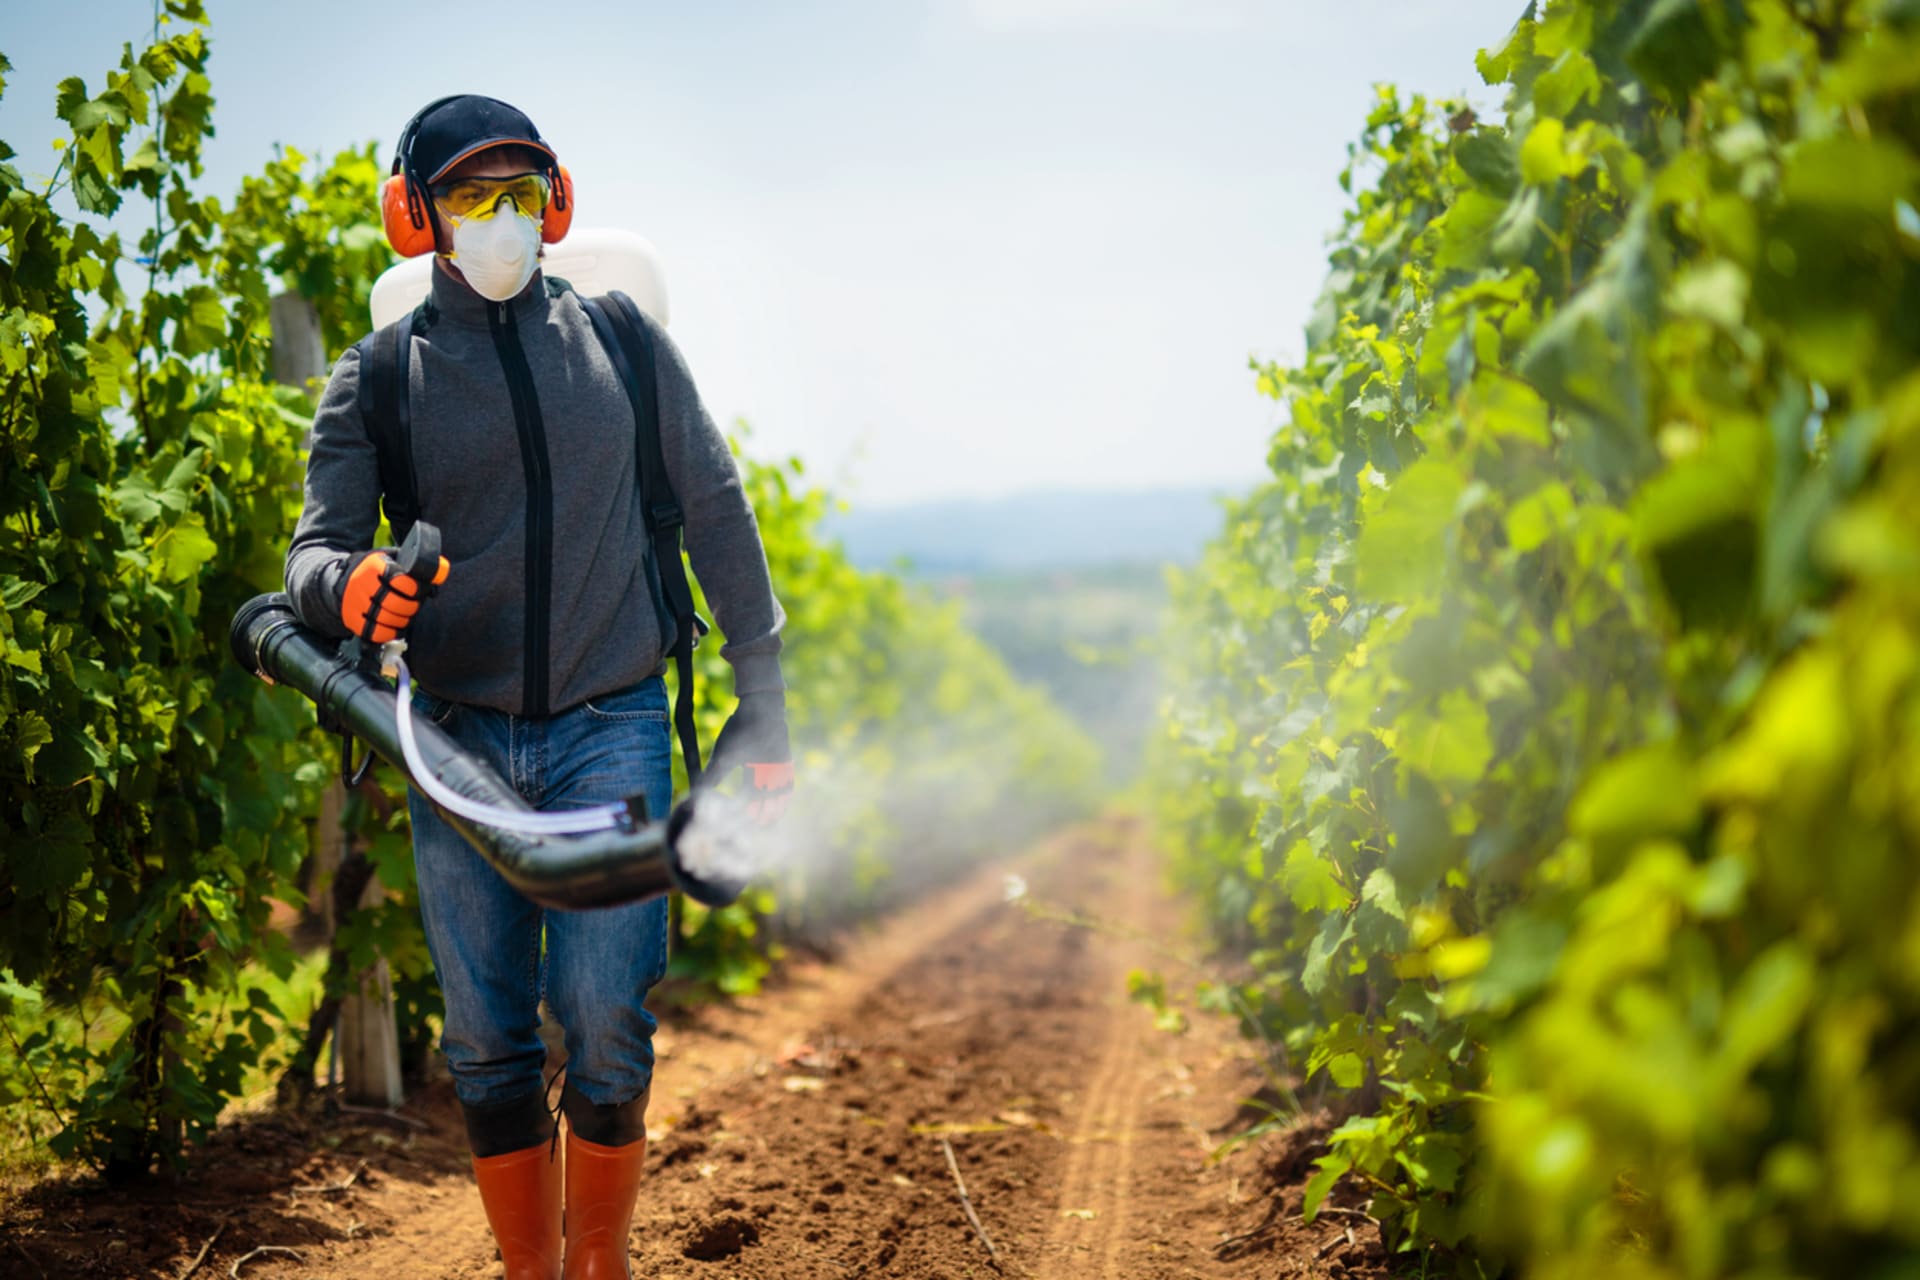 Pesticidy ulpívající na ovoci a zelenině mohou být karcinogenní